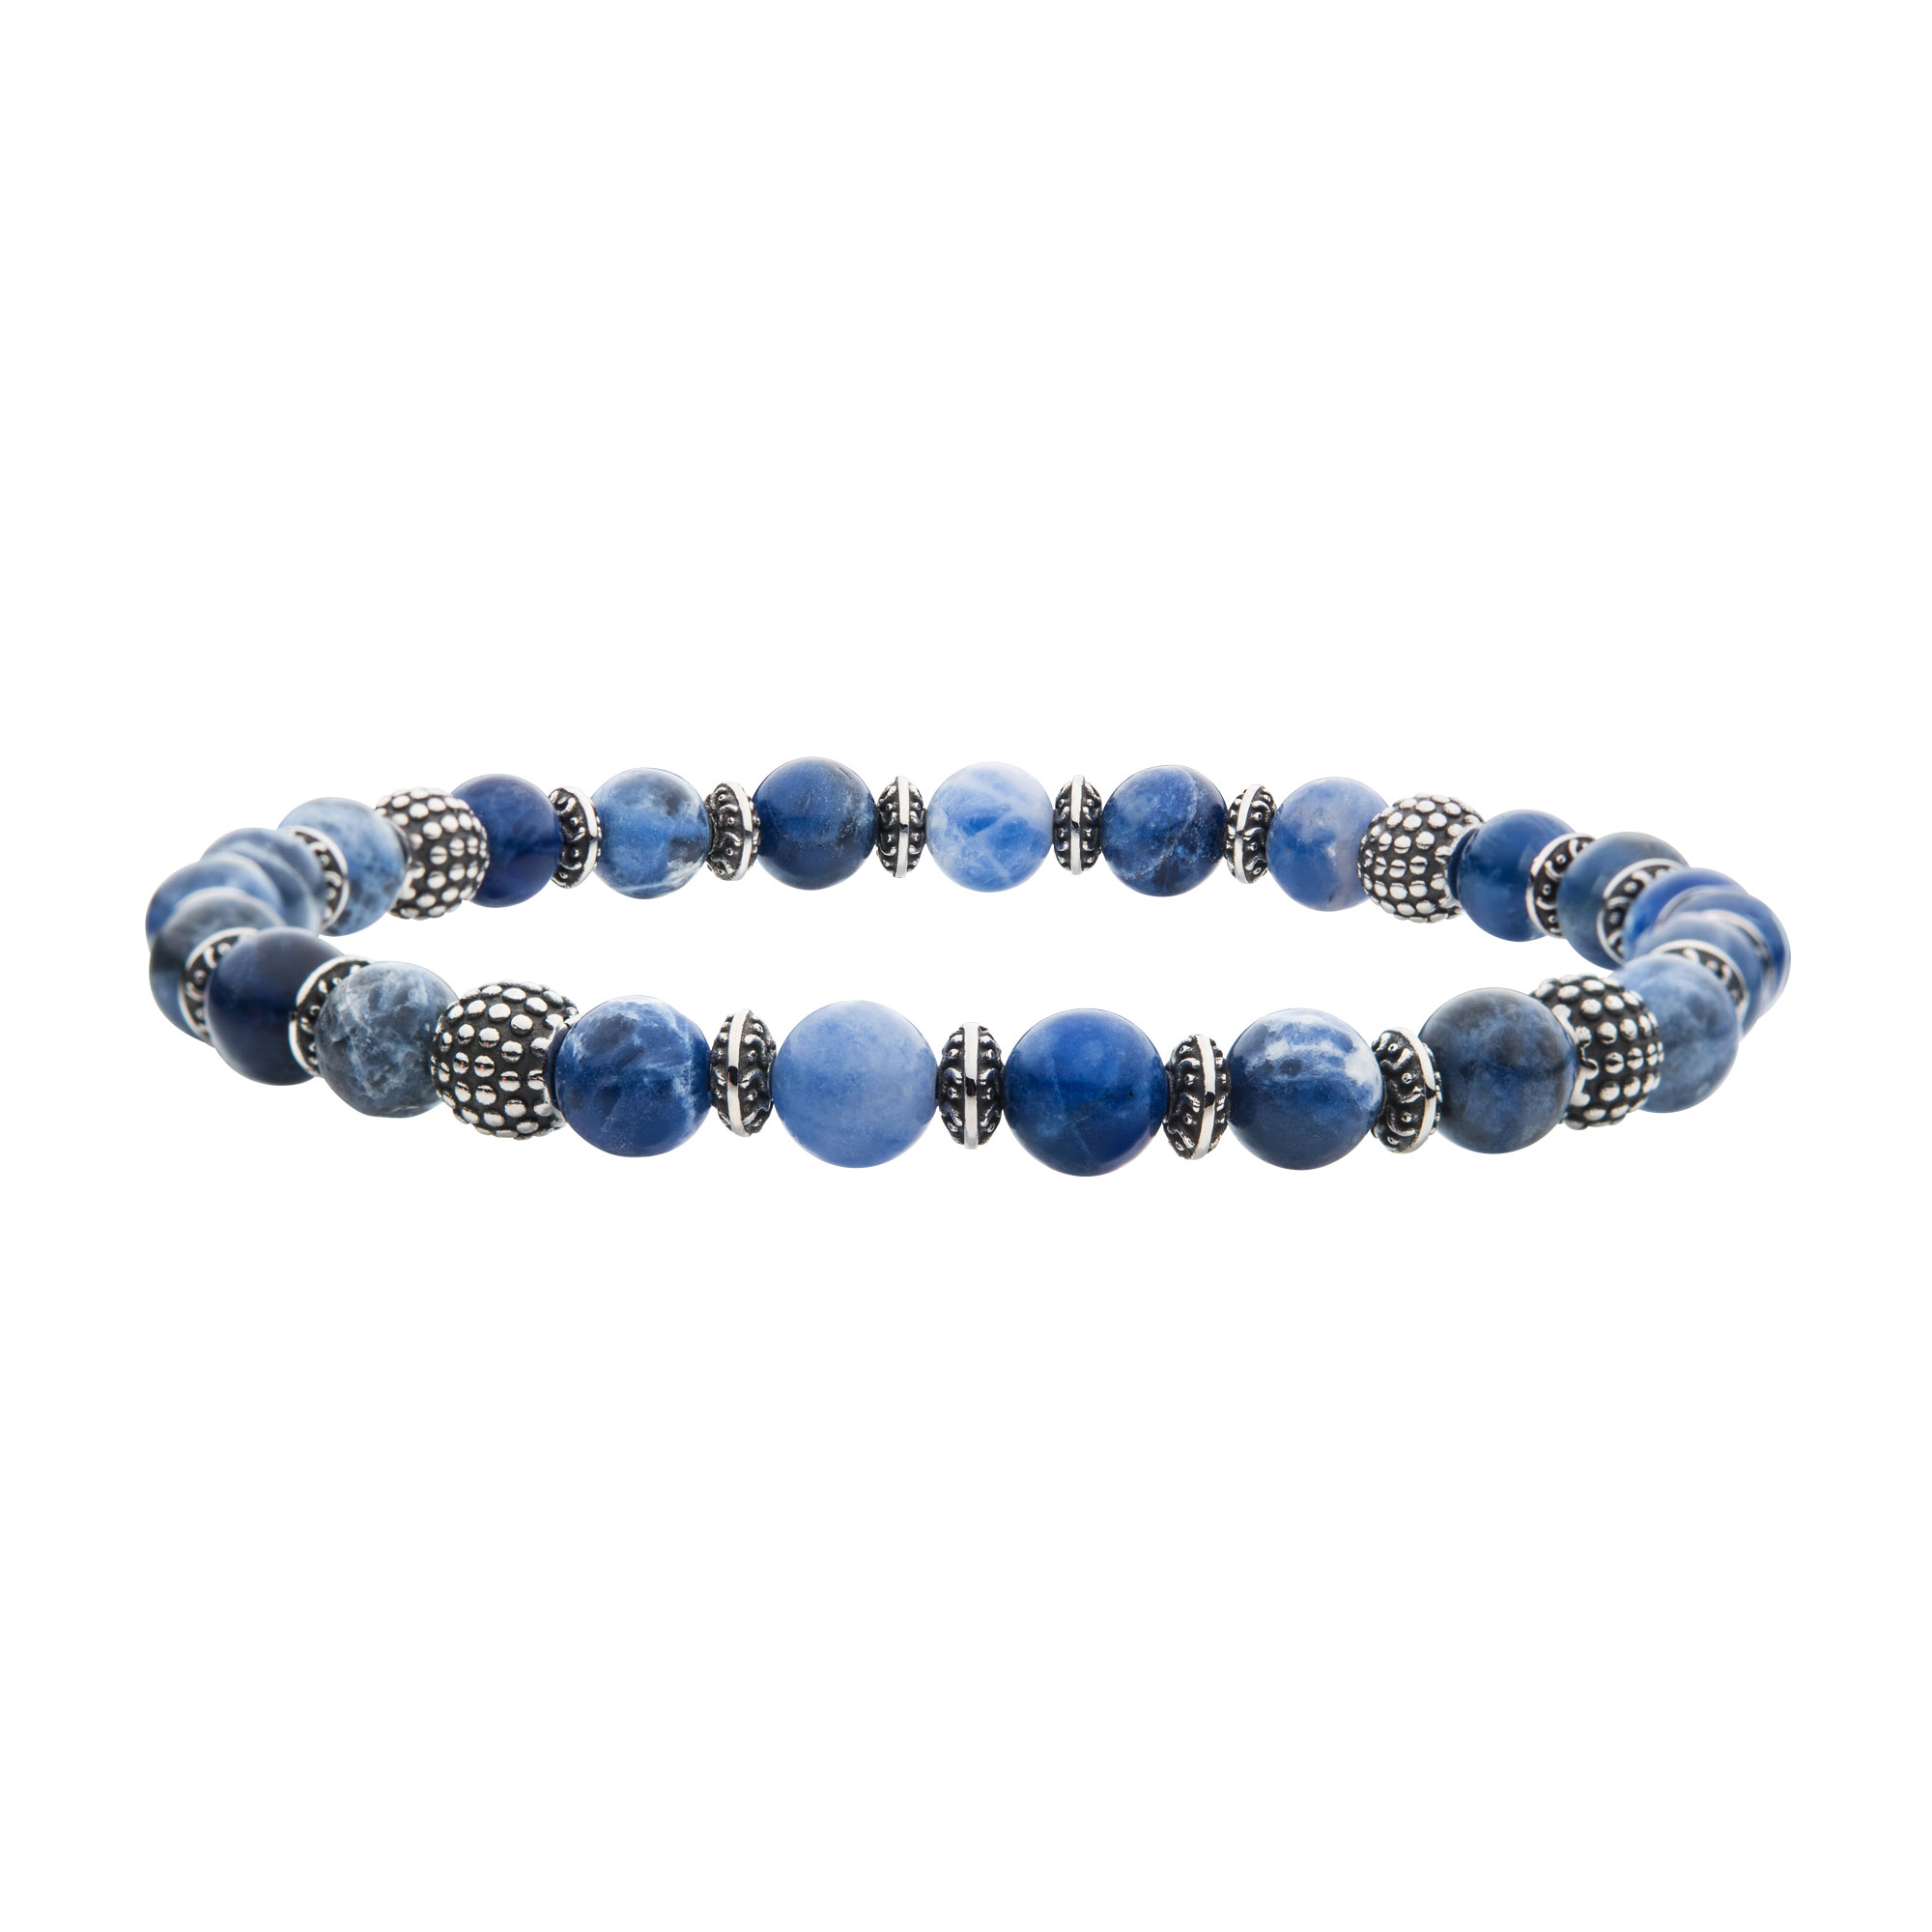 Blue Sodalite Stones with Black Oxidized Beads Bracelet Spath Jewelers Bartow, FL